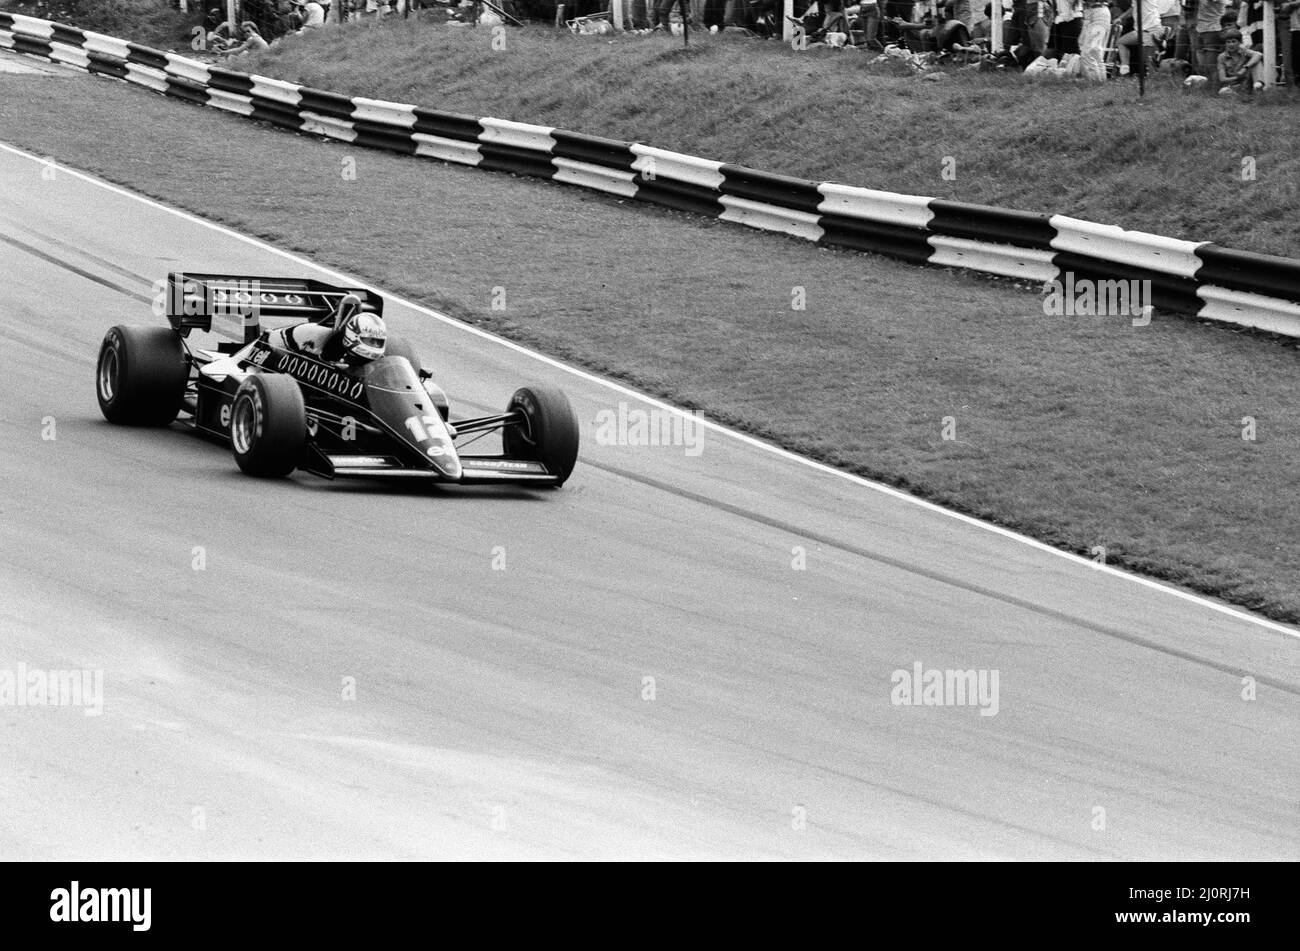 Grand Prix britannique 1984, Brands Hatch, dimanche 22nd juillet 1984. Notre photo montre ... Nigel Mansell, Lotus-Renault en action. Banque D'Images